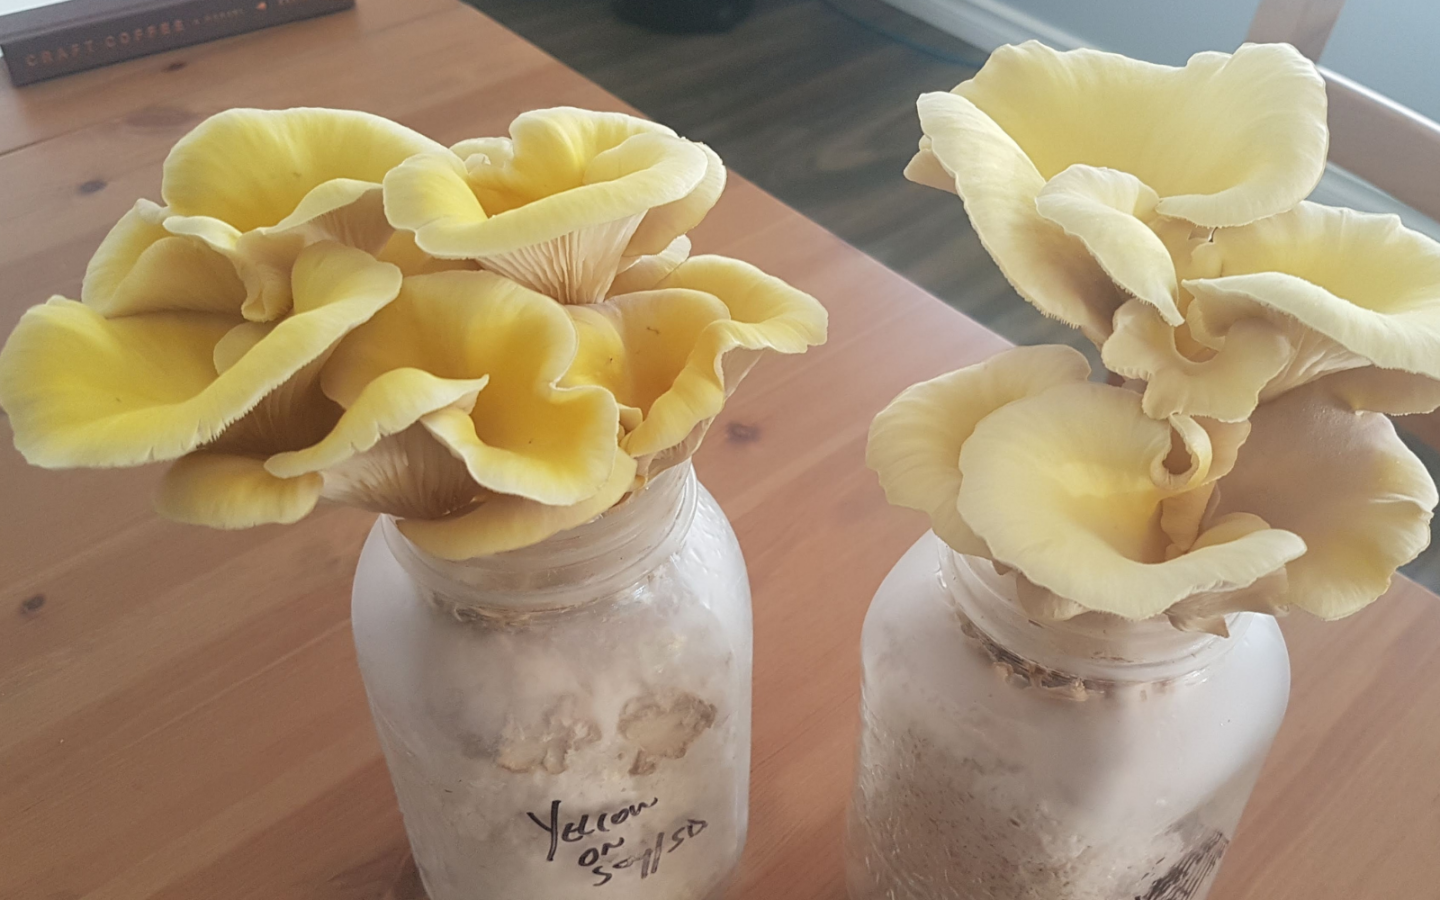 Growing Mushrooms In Bottles - FreshCap Mushrooms